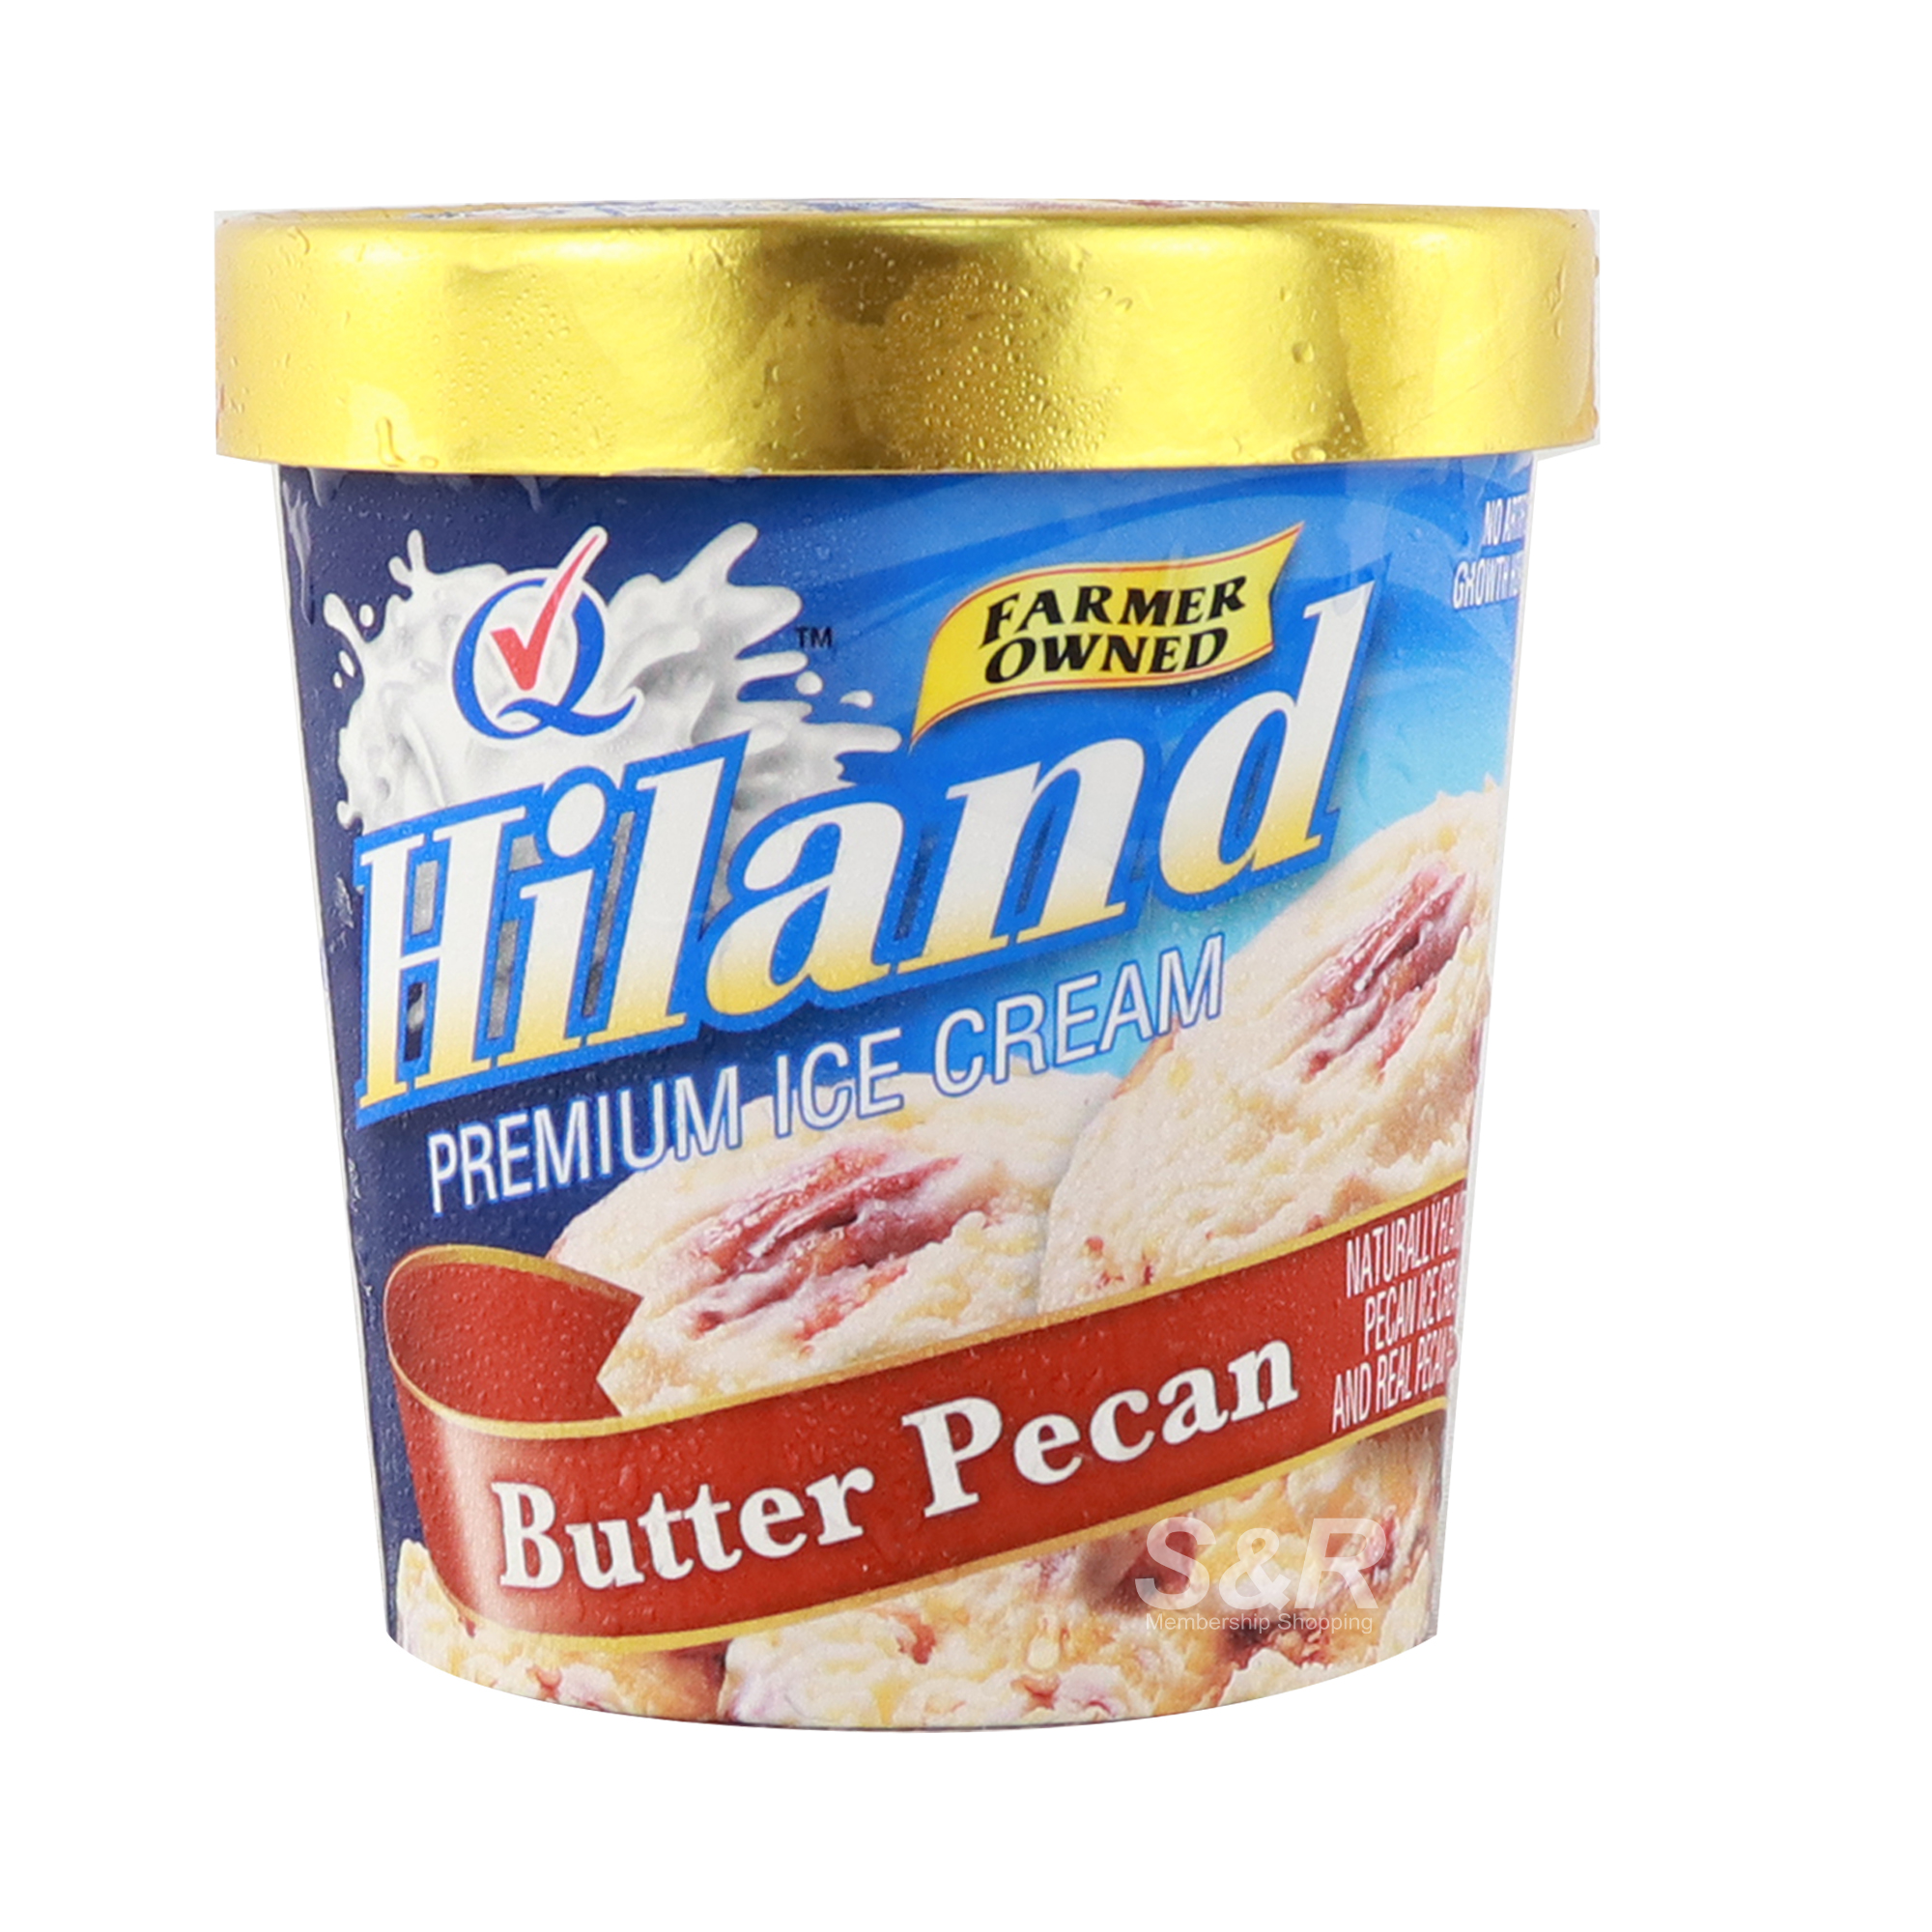 Hiland Premium Ice Cream Butter Pecan Flavor 473mL